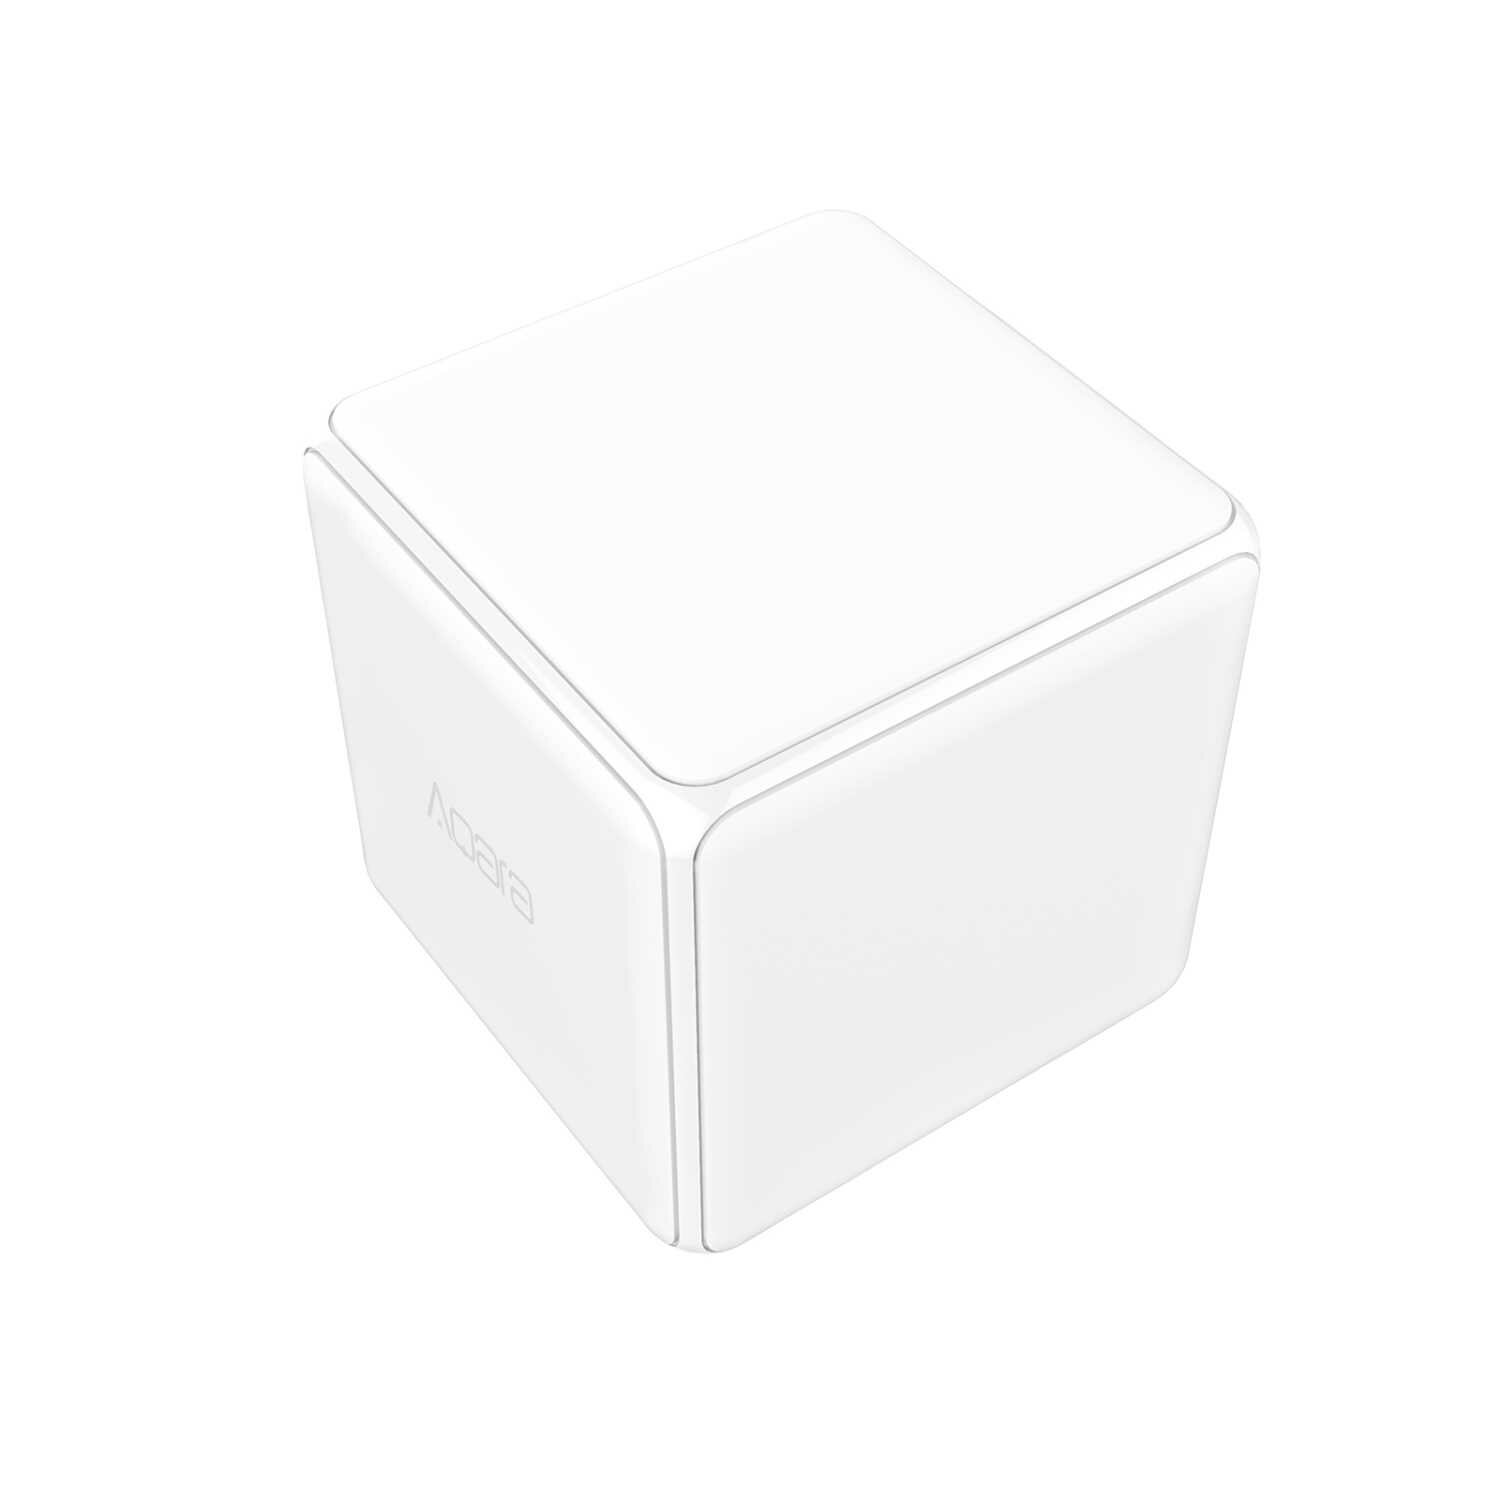     Aqara Cube (MFKZQ01LM) (White) RU